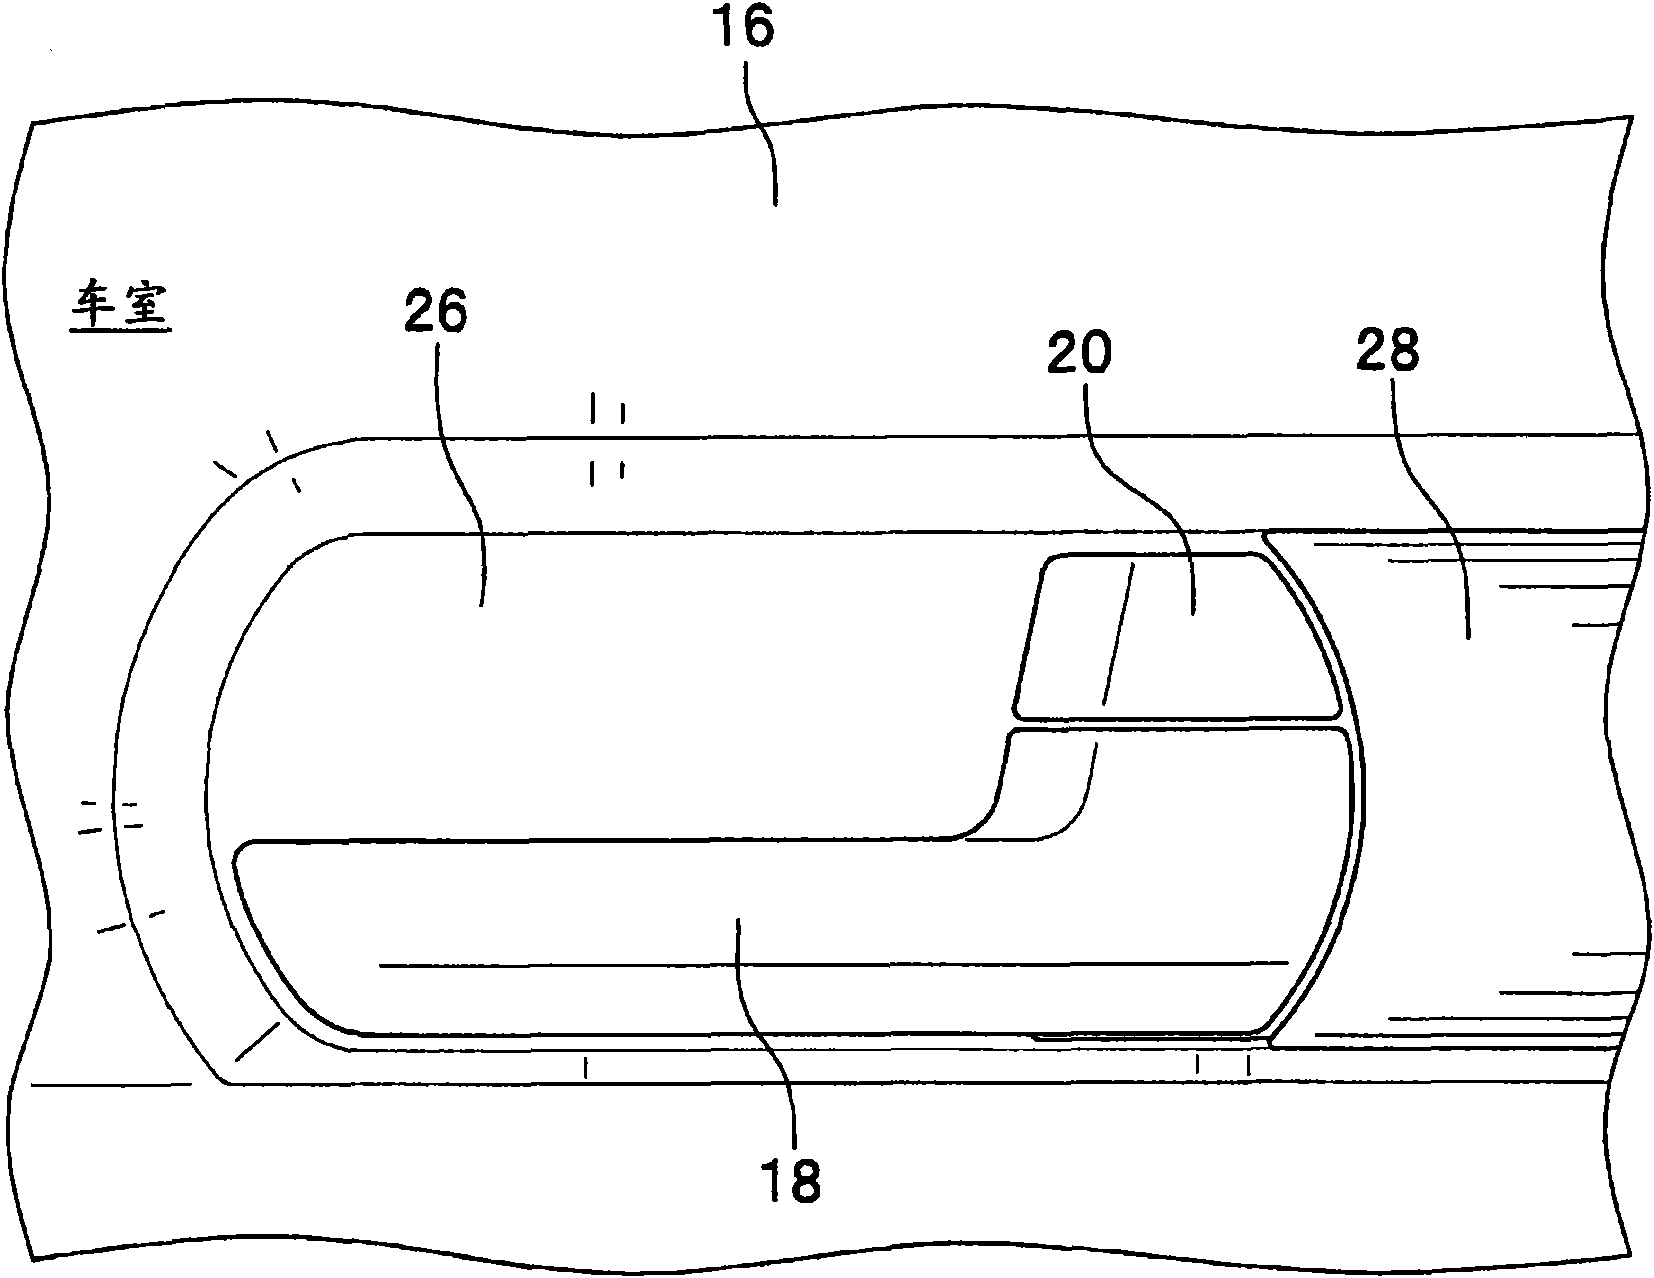 Installation structure of inner handle device of vehicular door